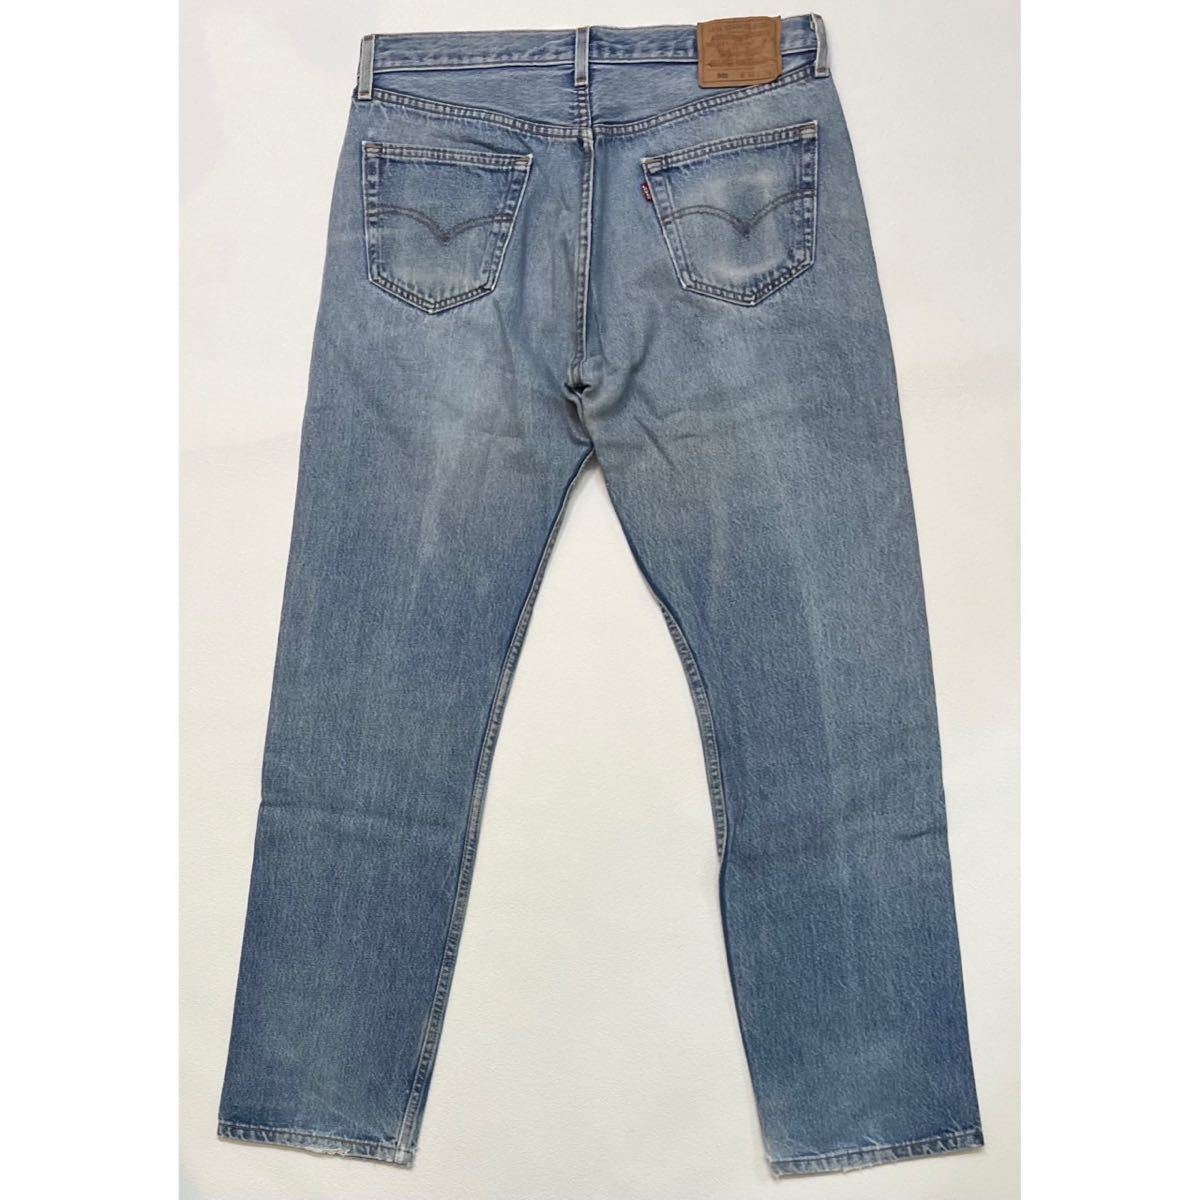 h108 90 年代 アメリカ 製 Levi's 501 W36 × L34 デニム パンツ USA リーバイス 90s vintage ビンテージ denim pants_画像2